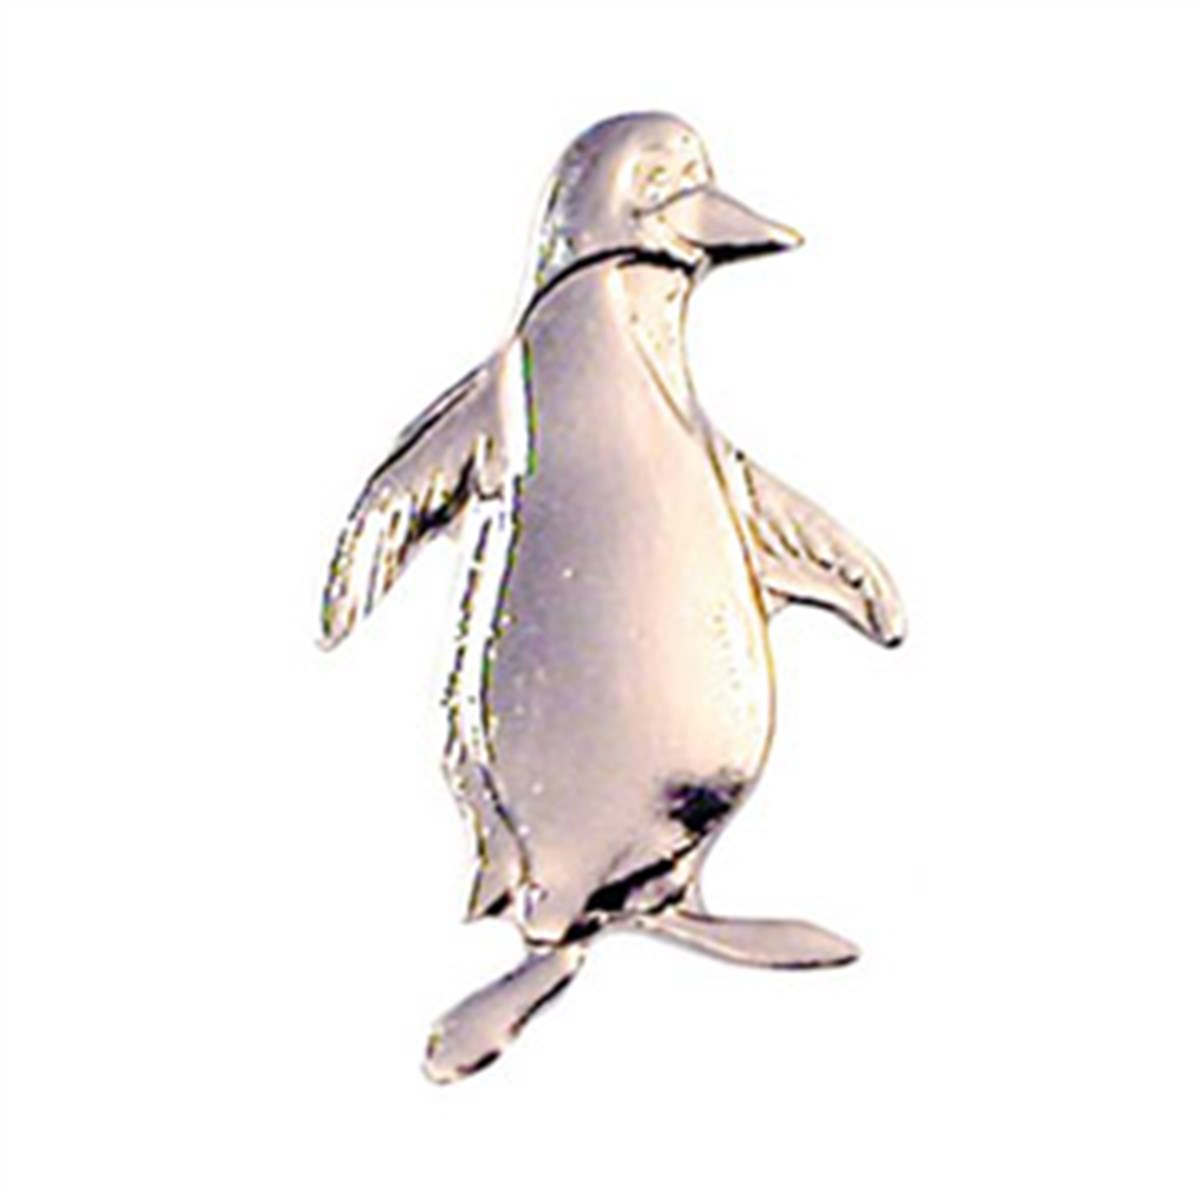 Pingvinen silver